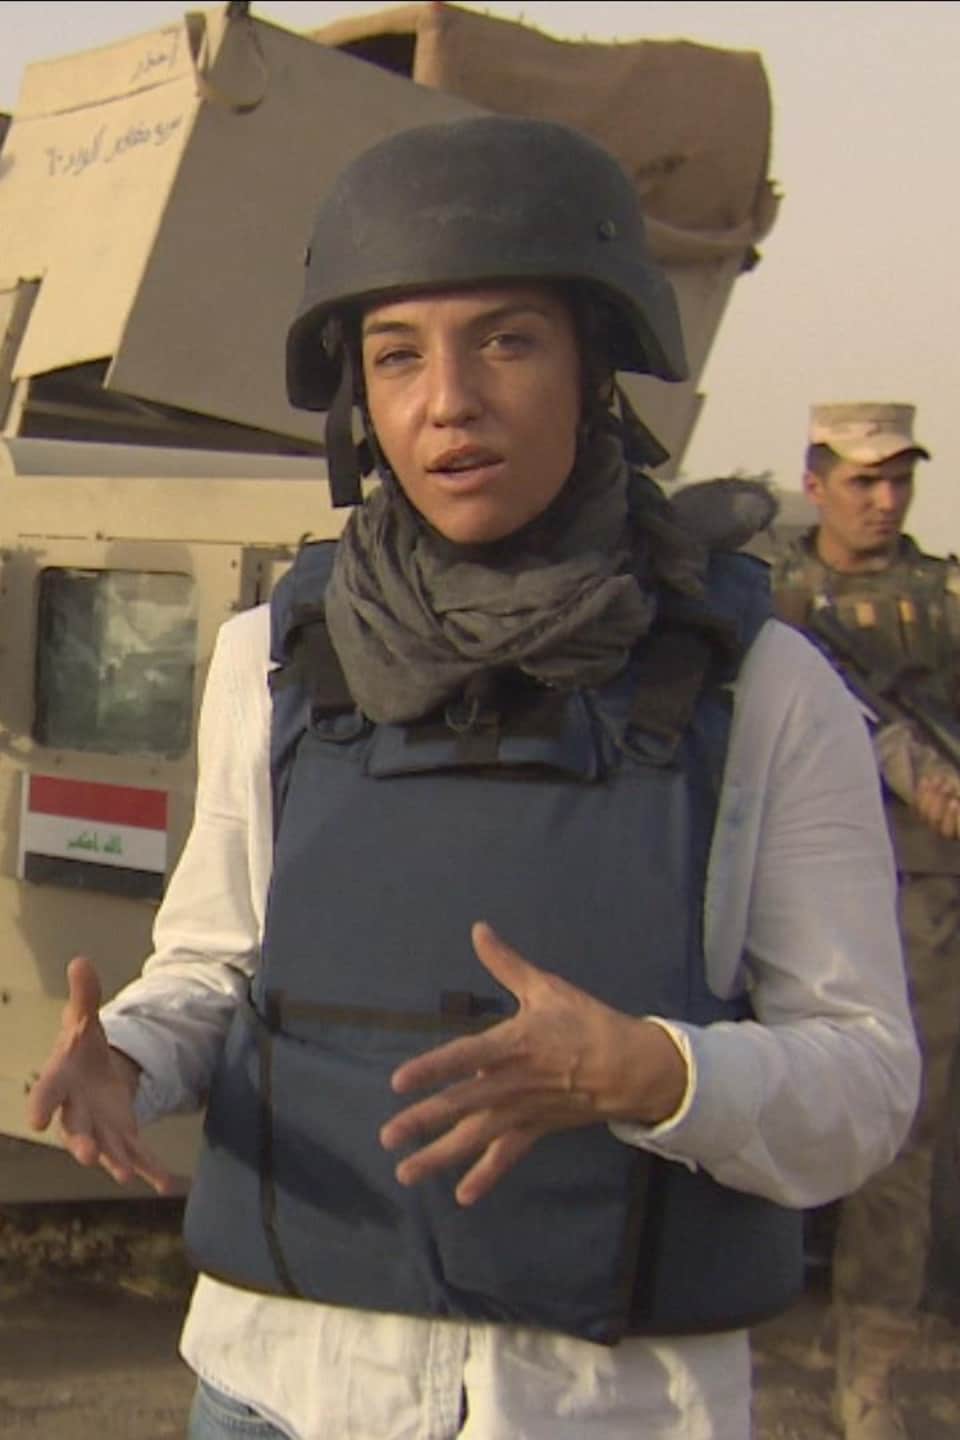 La journaliste Marie-Ève Bédard, portant
casque et gilet pare-balles en Irak avec des militaires irakiens en arrière plan.